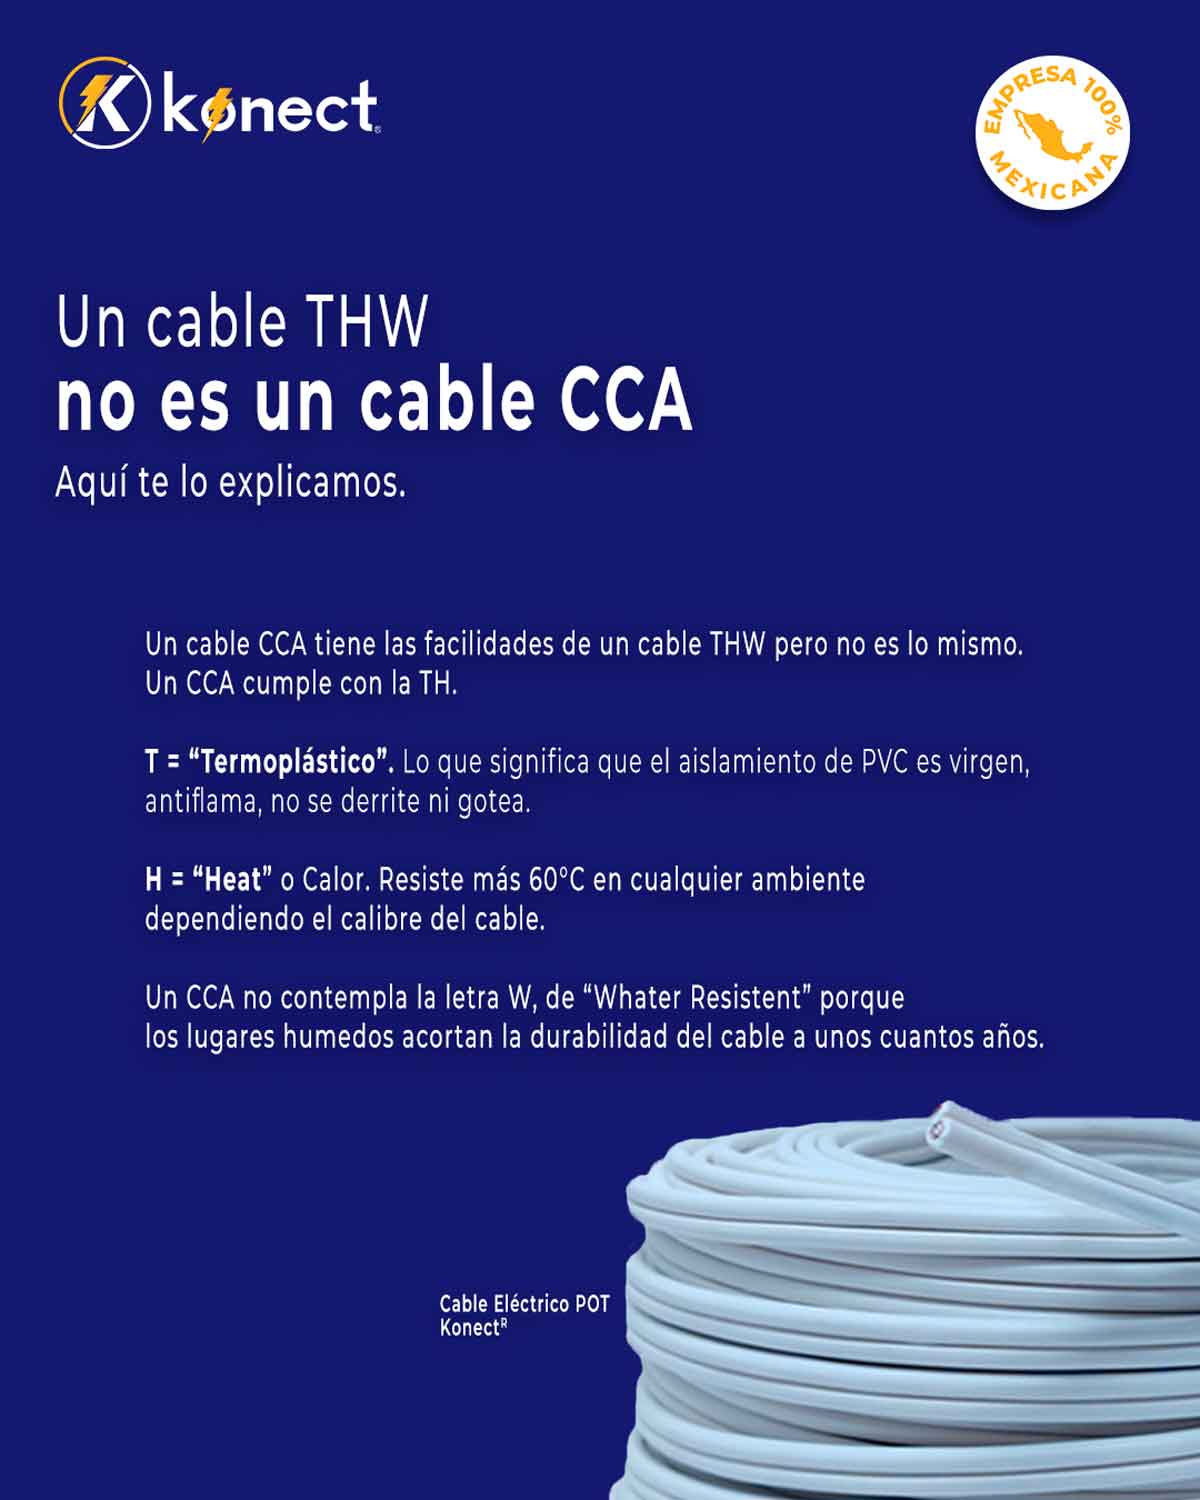 Cable Electrico Cca Calibre 8 Negro Rollo 100m Konect KONECT Ferreabasto